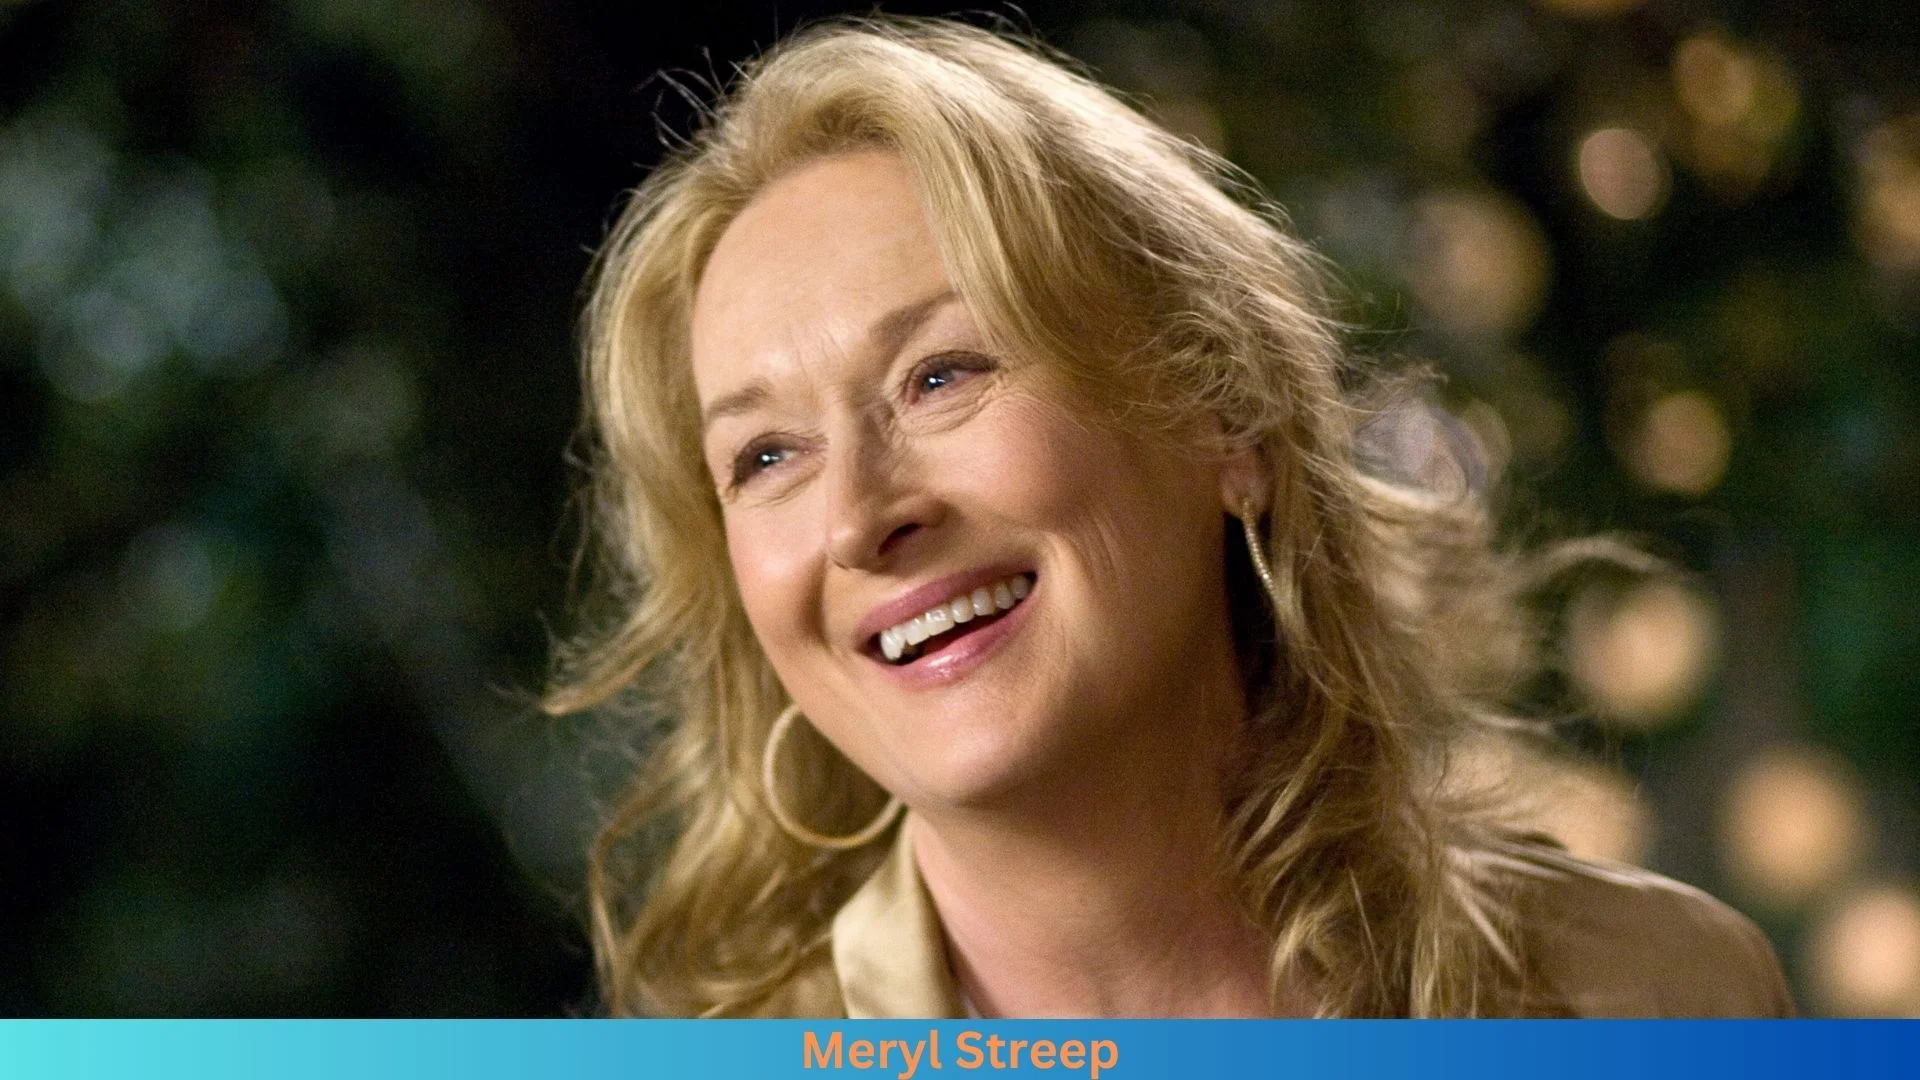 Net Worth of Meryl Streep